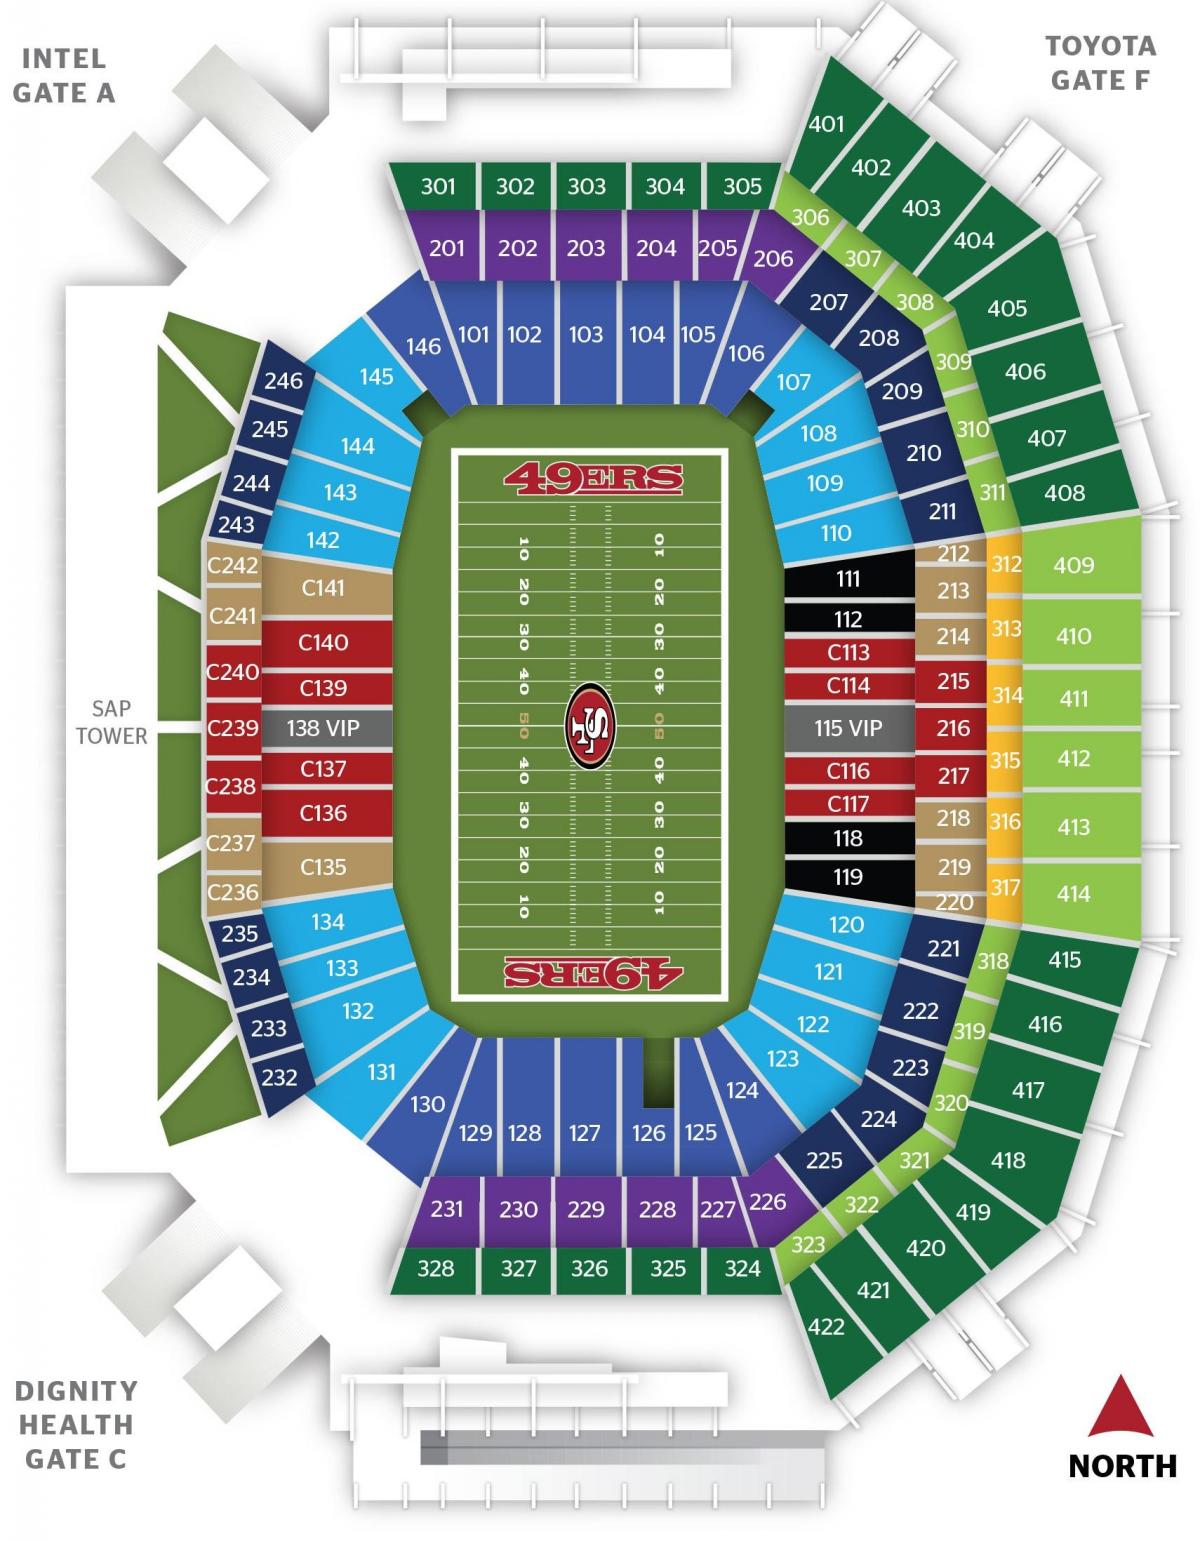 Zemljevid San Francisco 49ers stadion